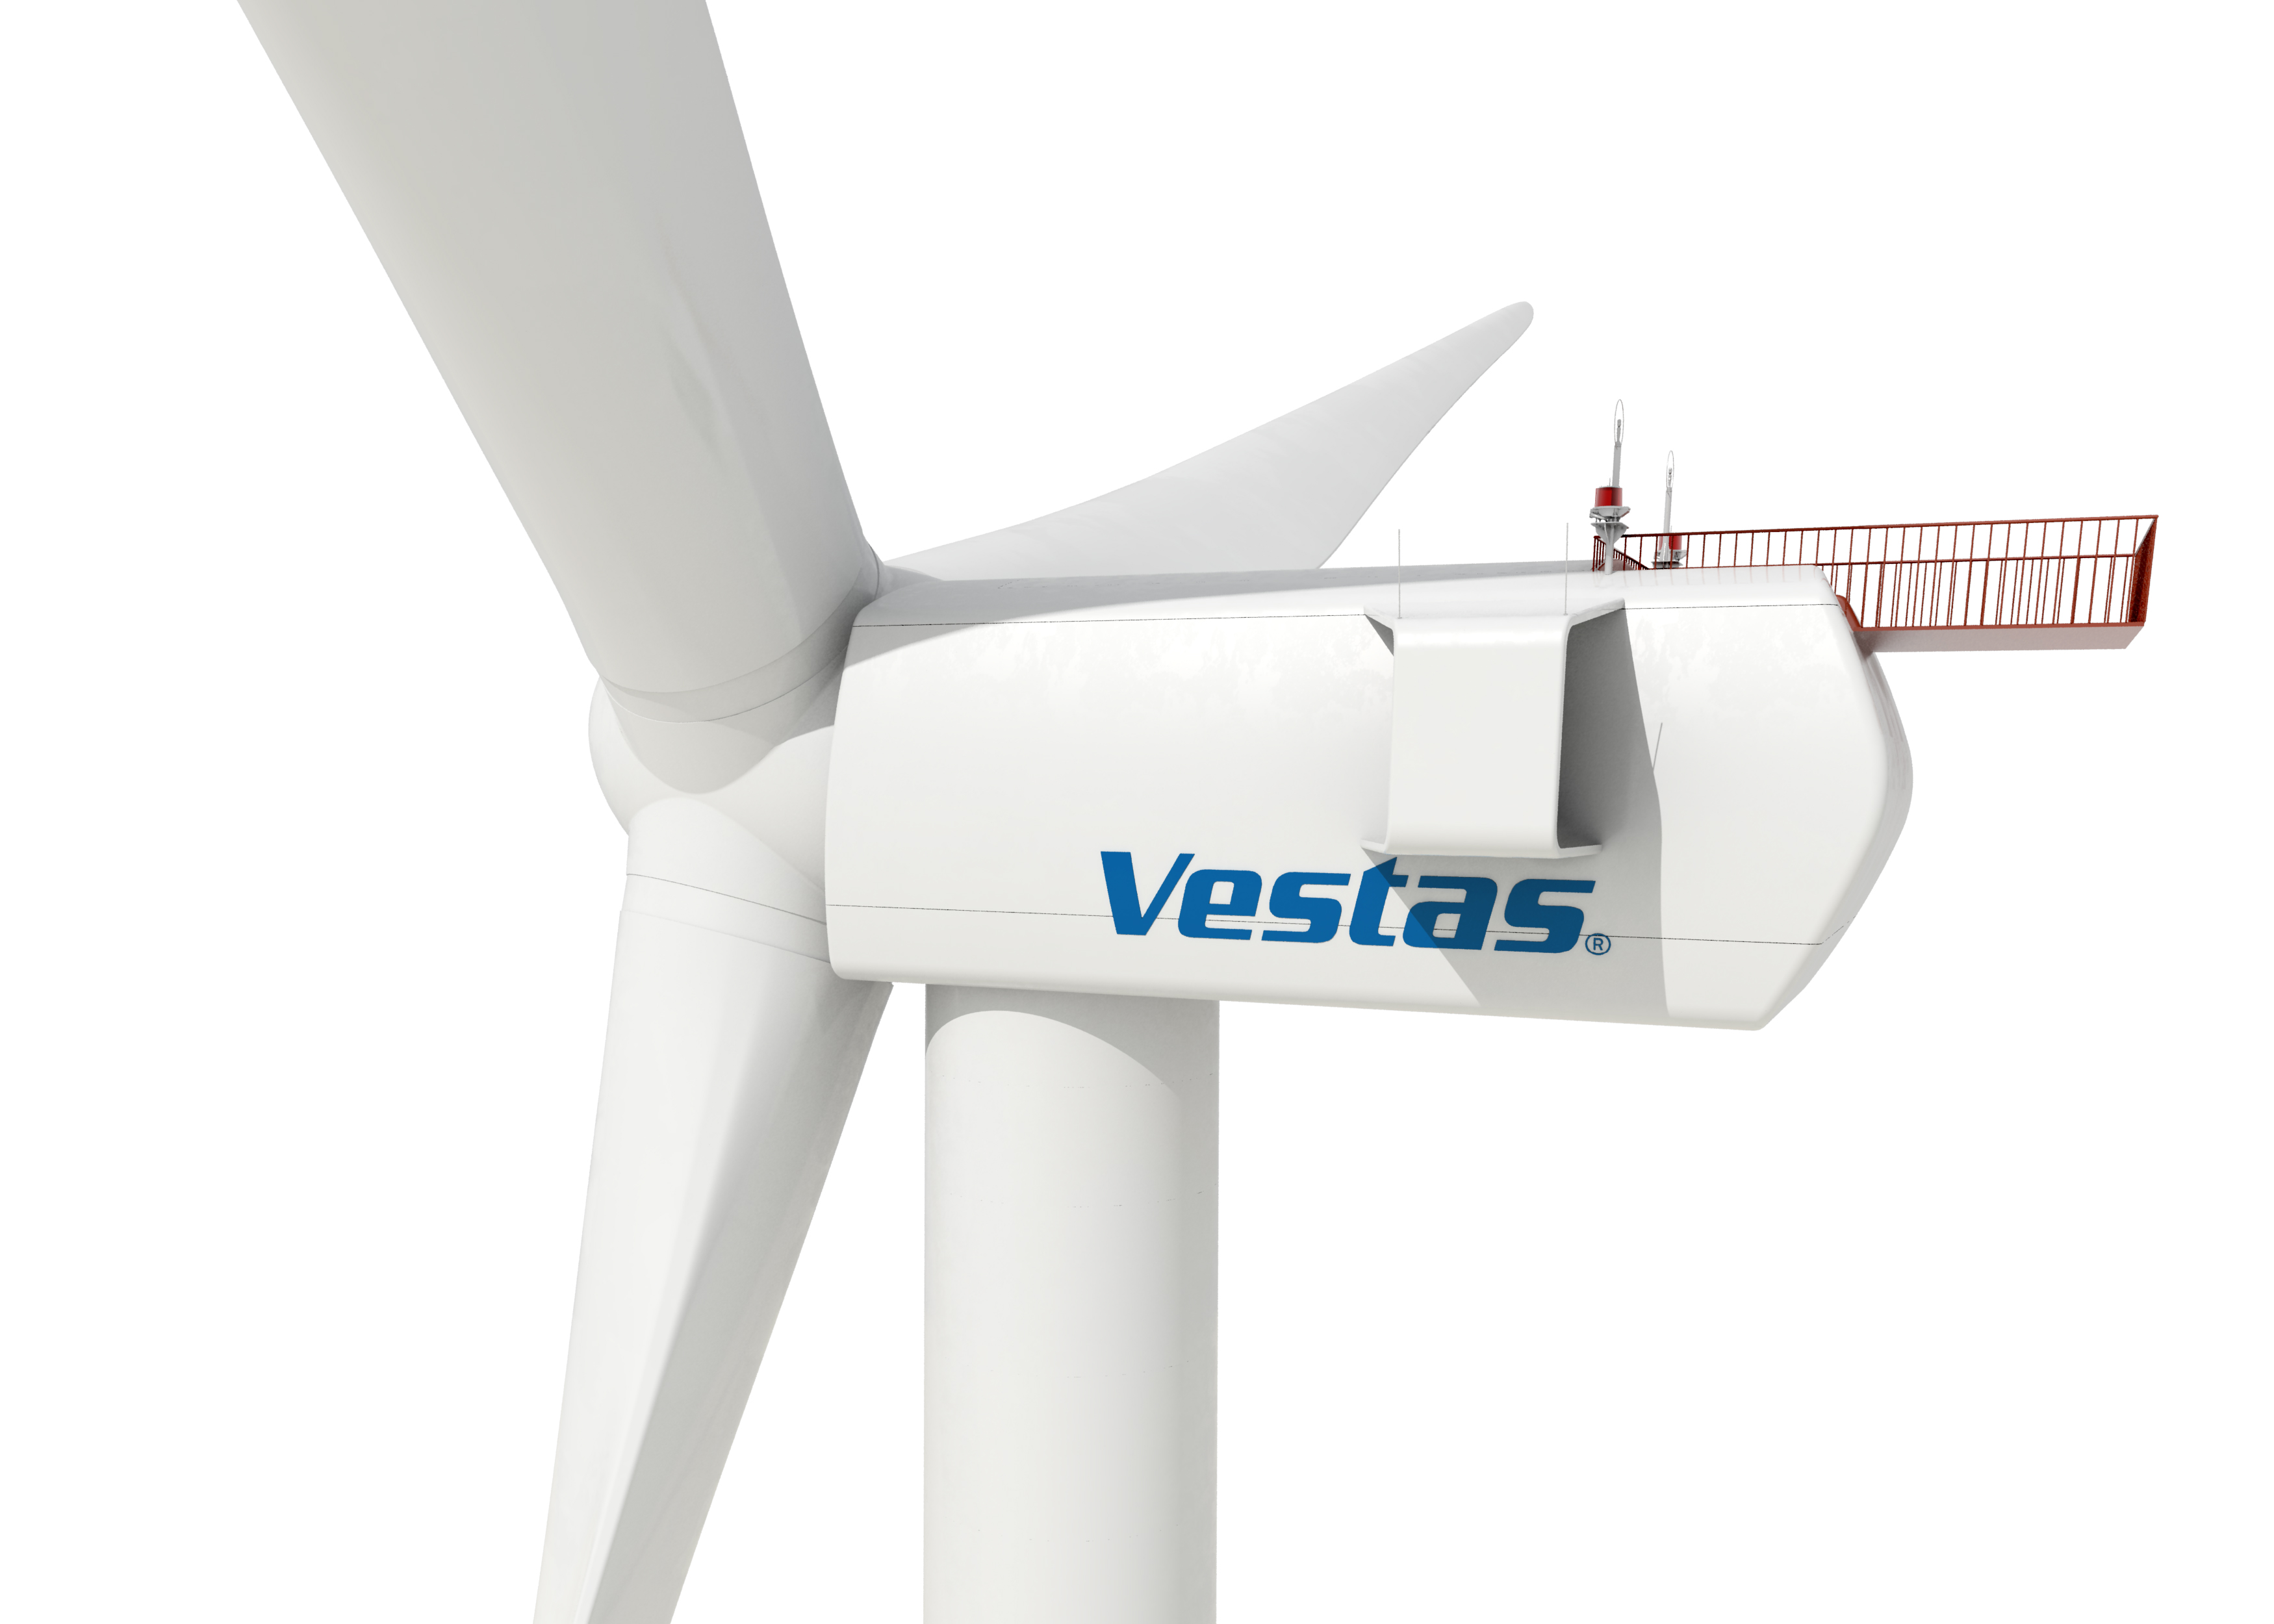 Eólica en Perú: Vestas suministrará 62 aerogeneradores para dos parques eólicos